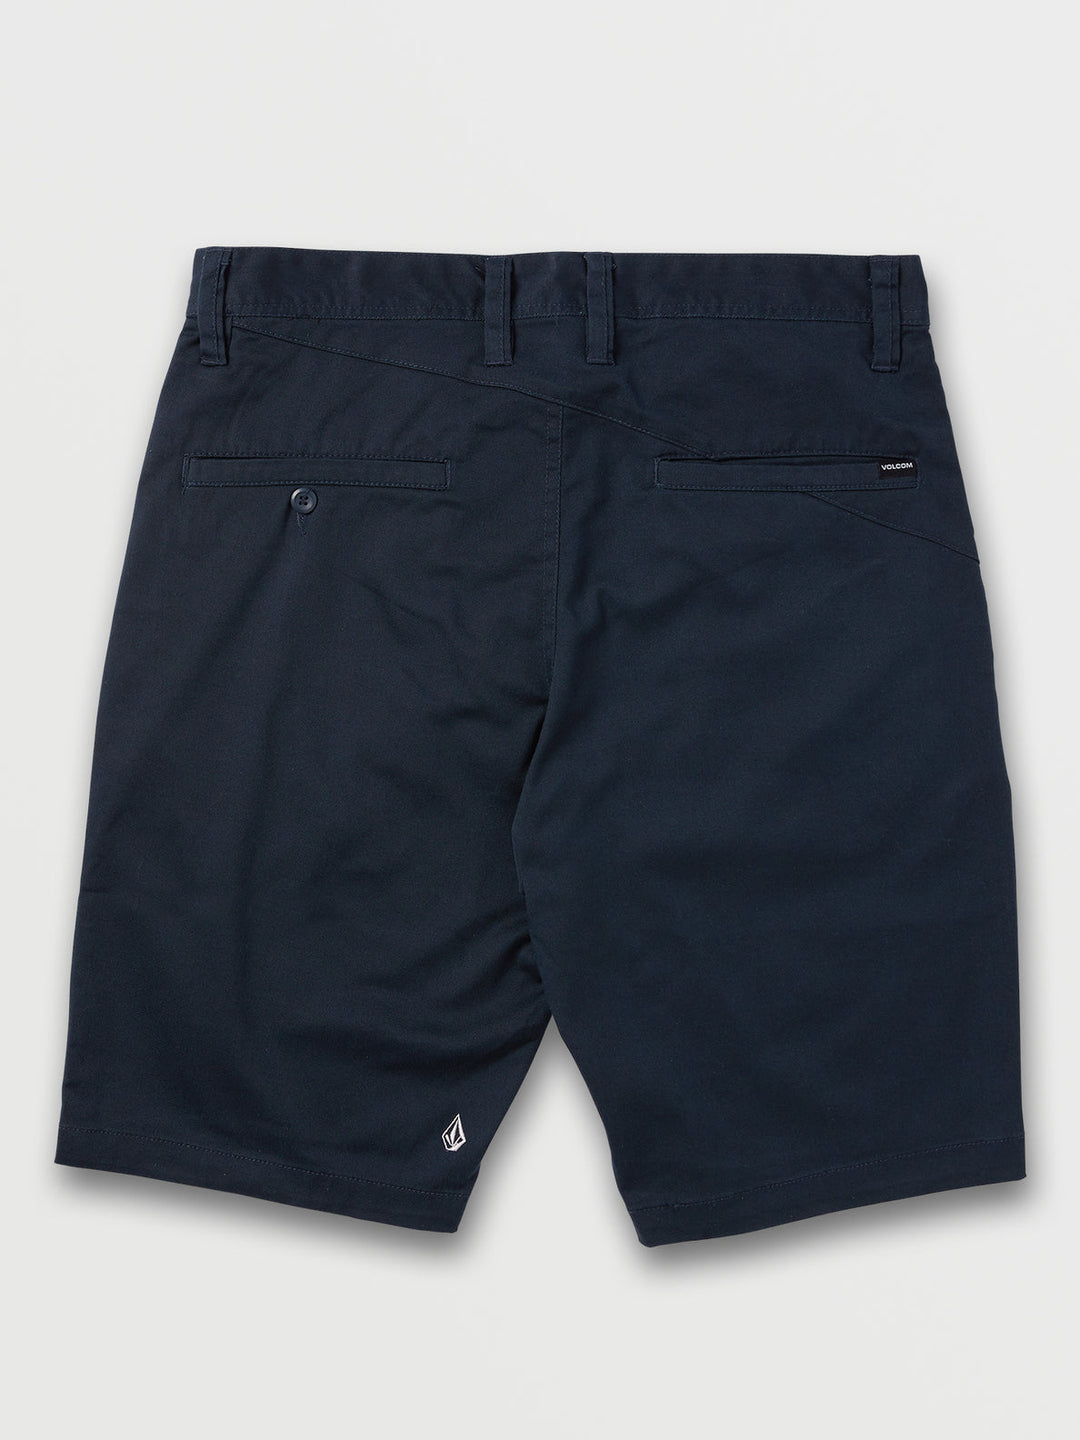 Volcom Frickin Modern Stretch Shorts - Dark Navy - Sun Diego Boardshop